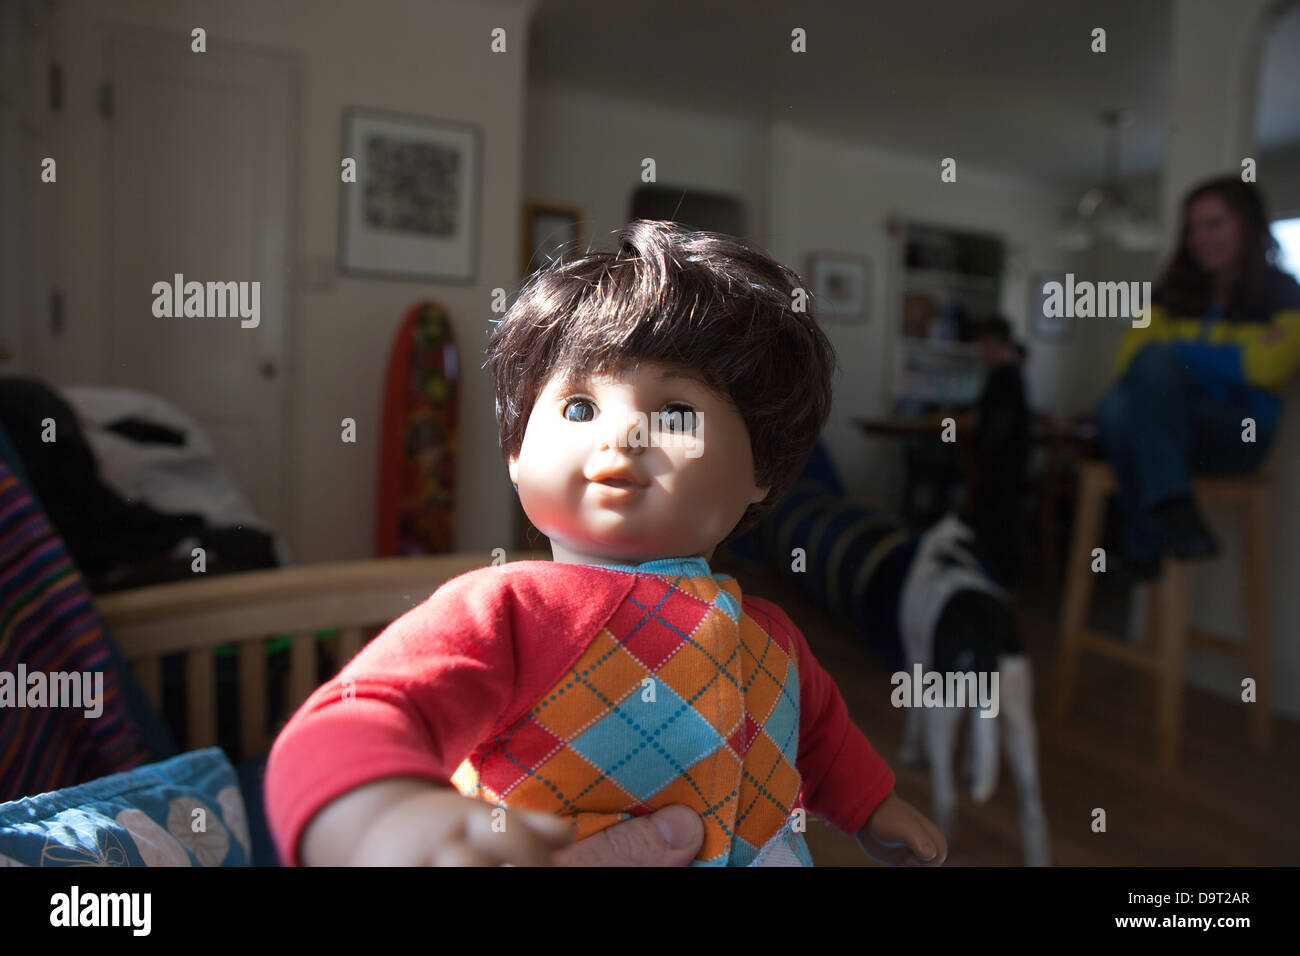 Nahaufnahme einer männlichen Puppe von American Girl. Stockfoto